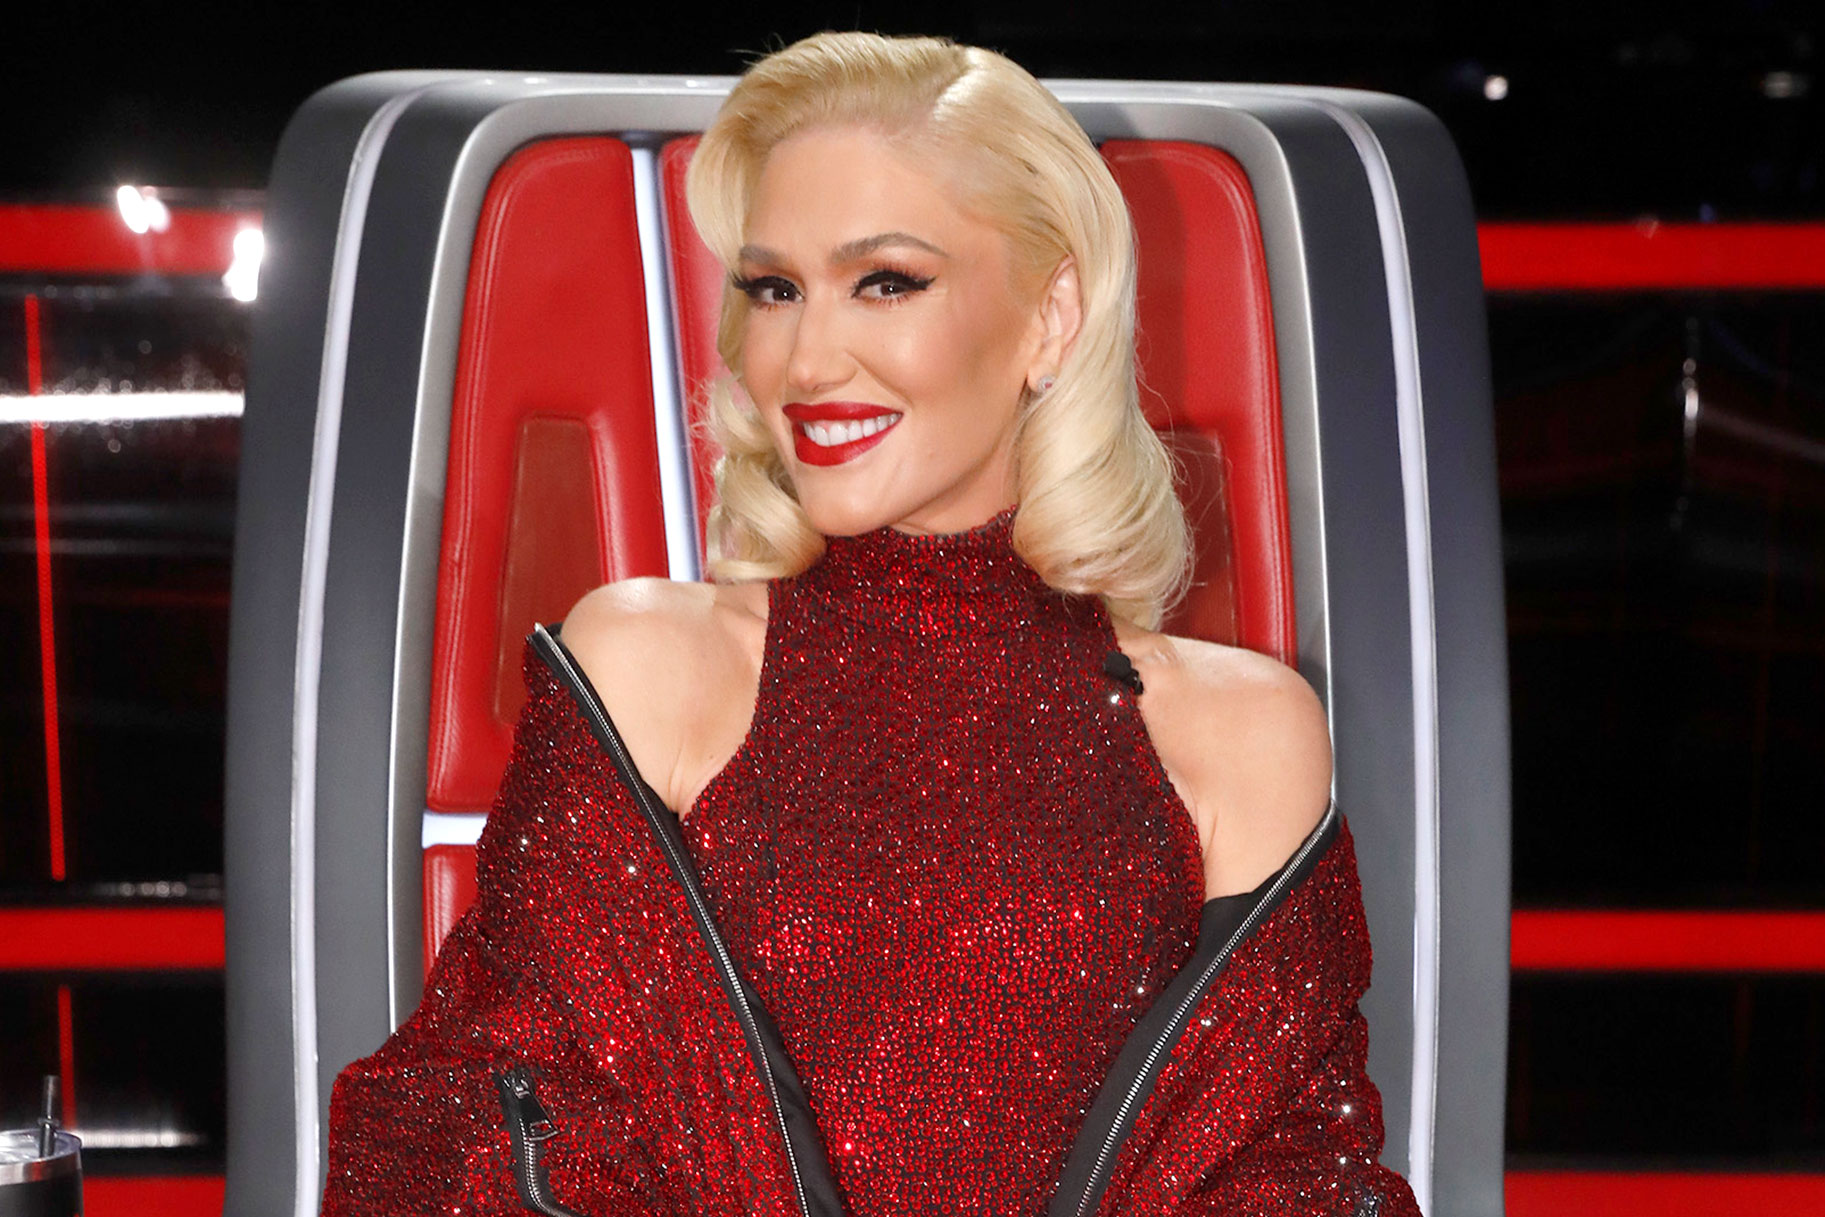 Gwen Stefani on The Voice finale